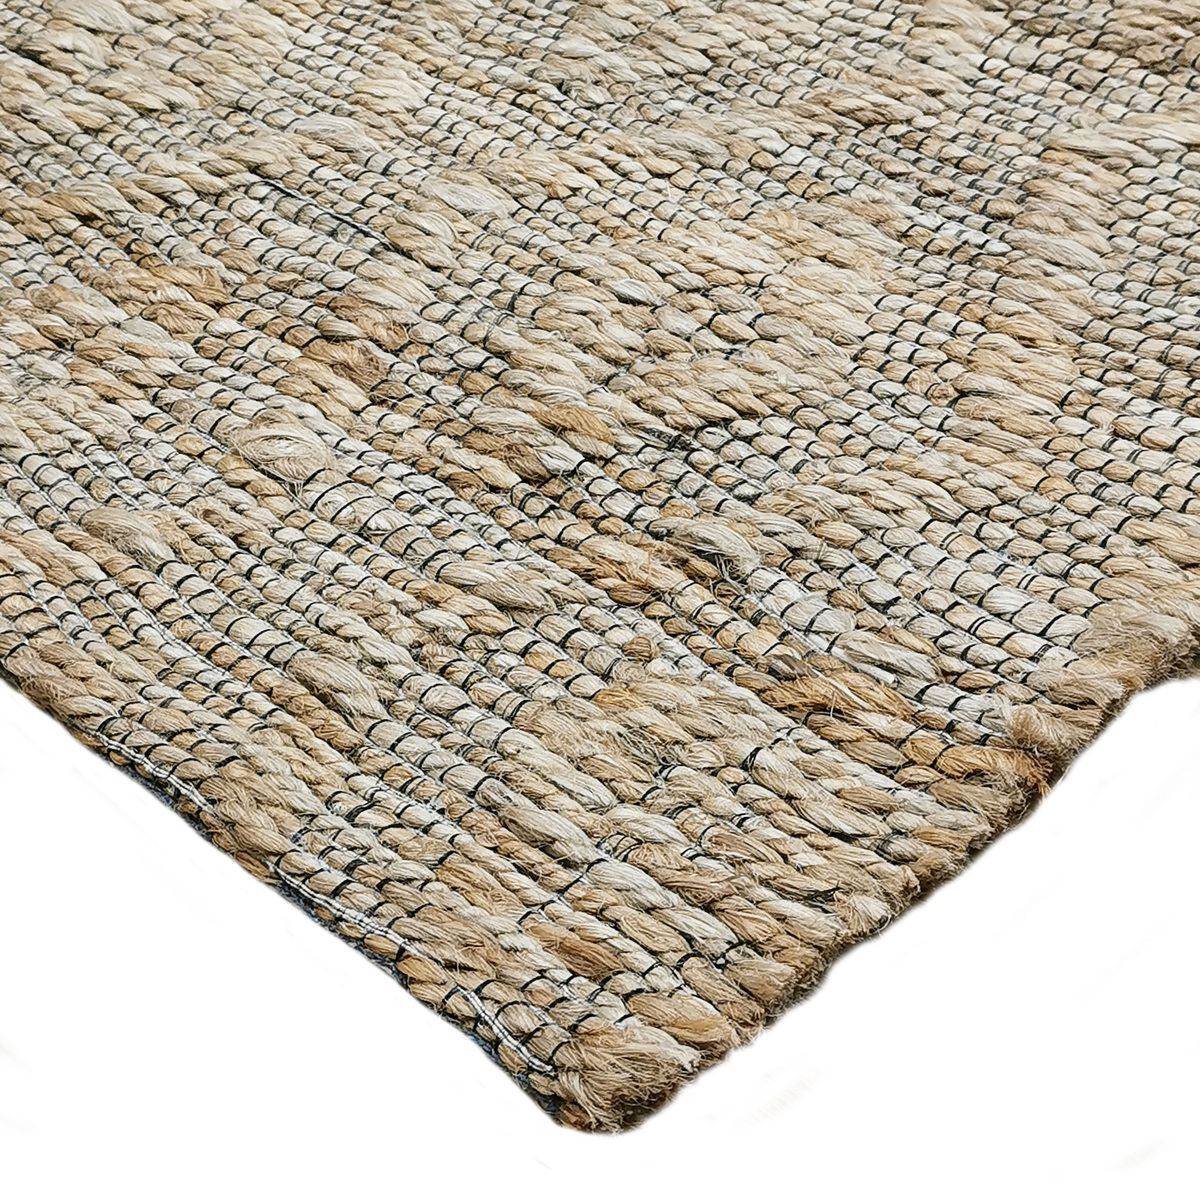 Le tapis jute artisanal rayures tressées Voir nos formats offerts